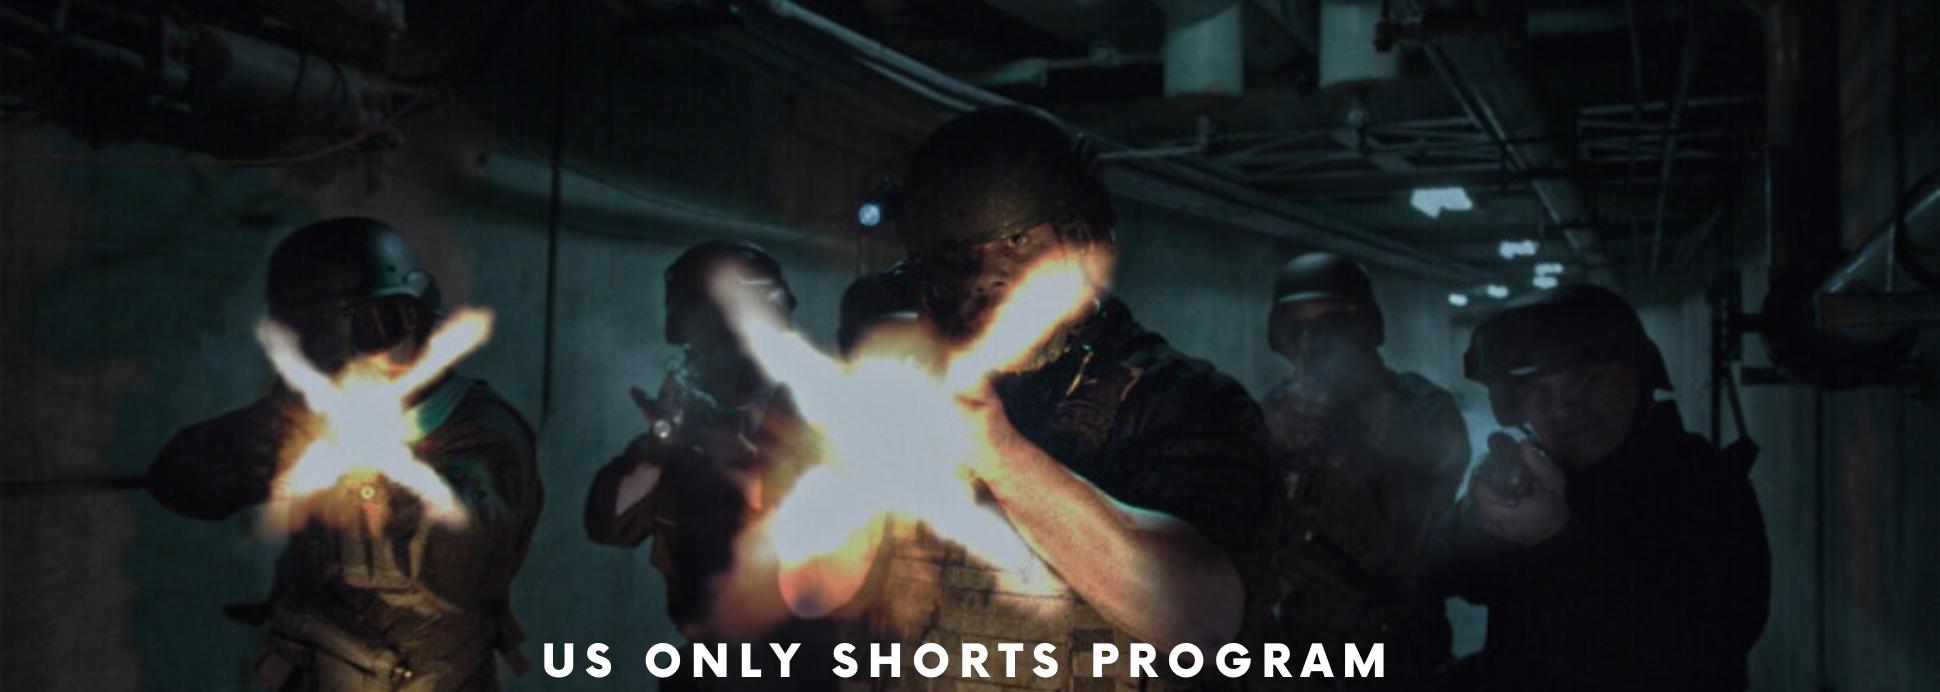 NY Only Shorts Program 